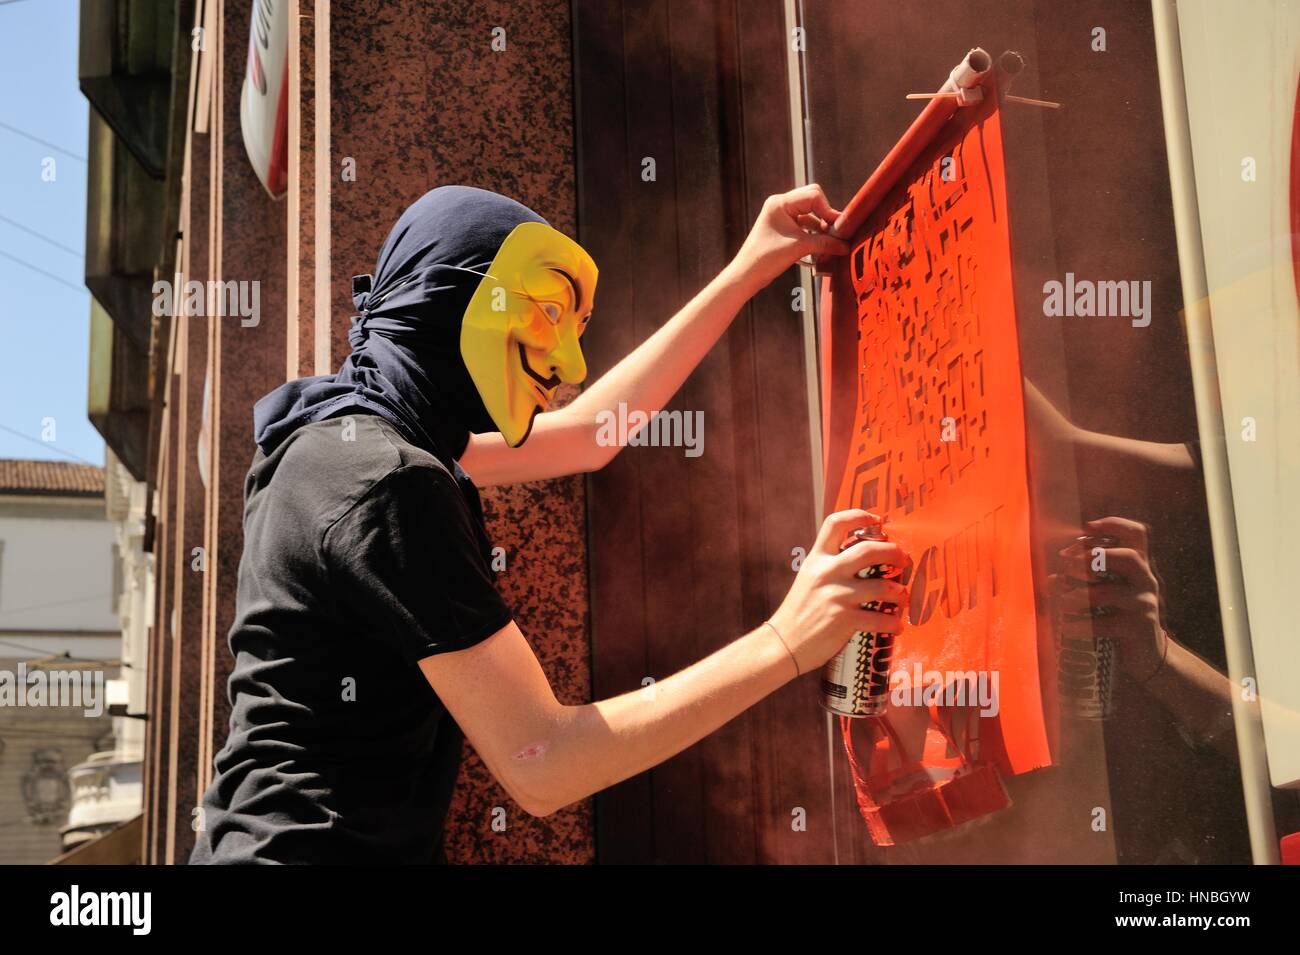 Manifestante anónimo en contra de la austeridad demostración Foto de stock